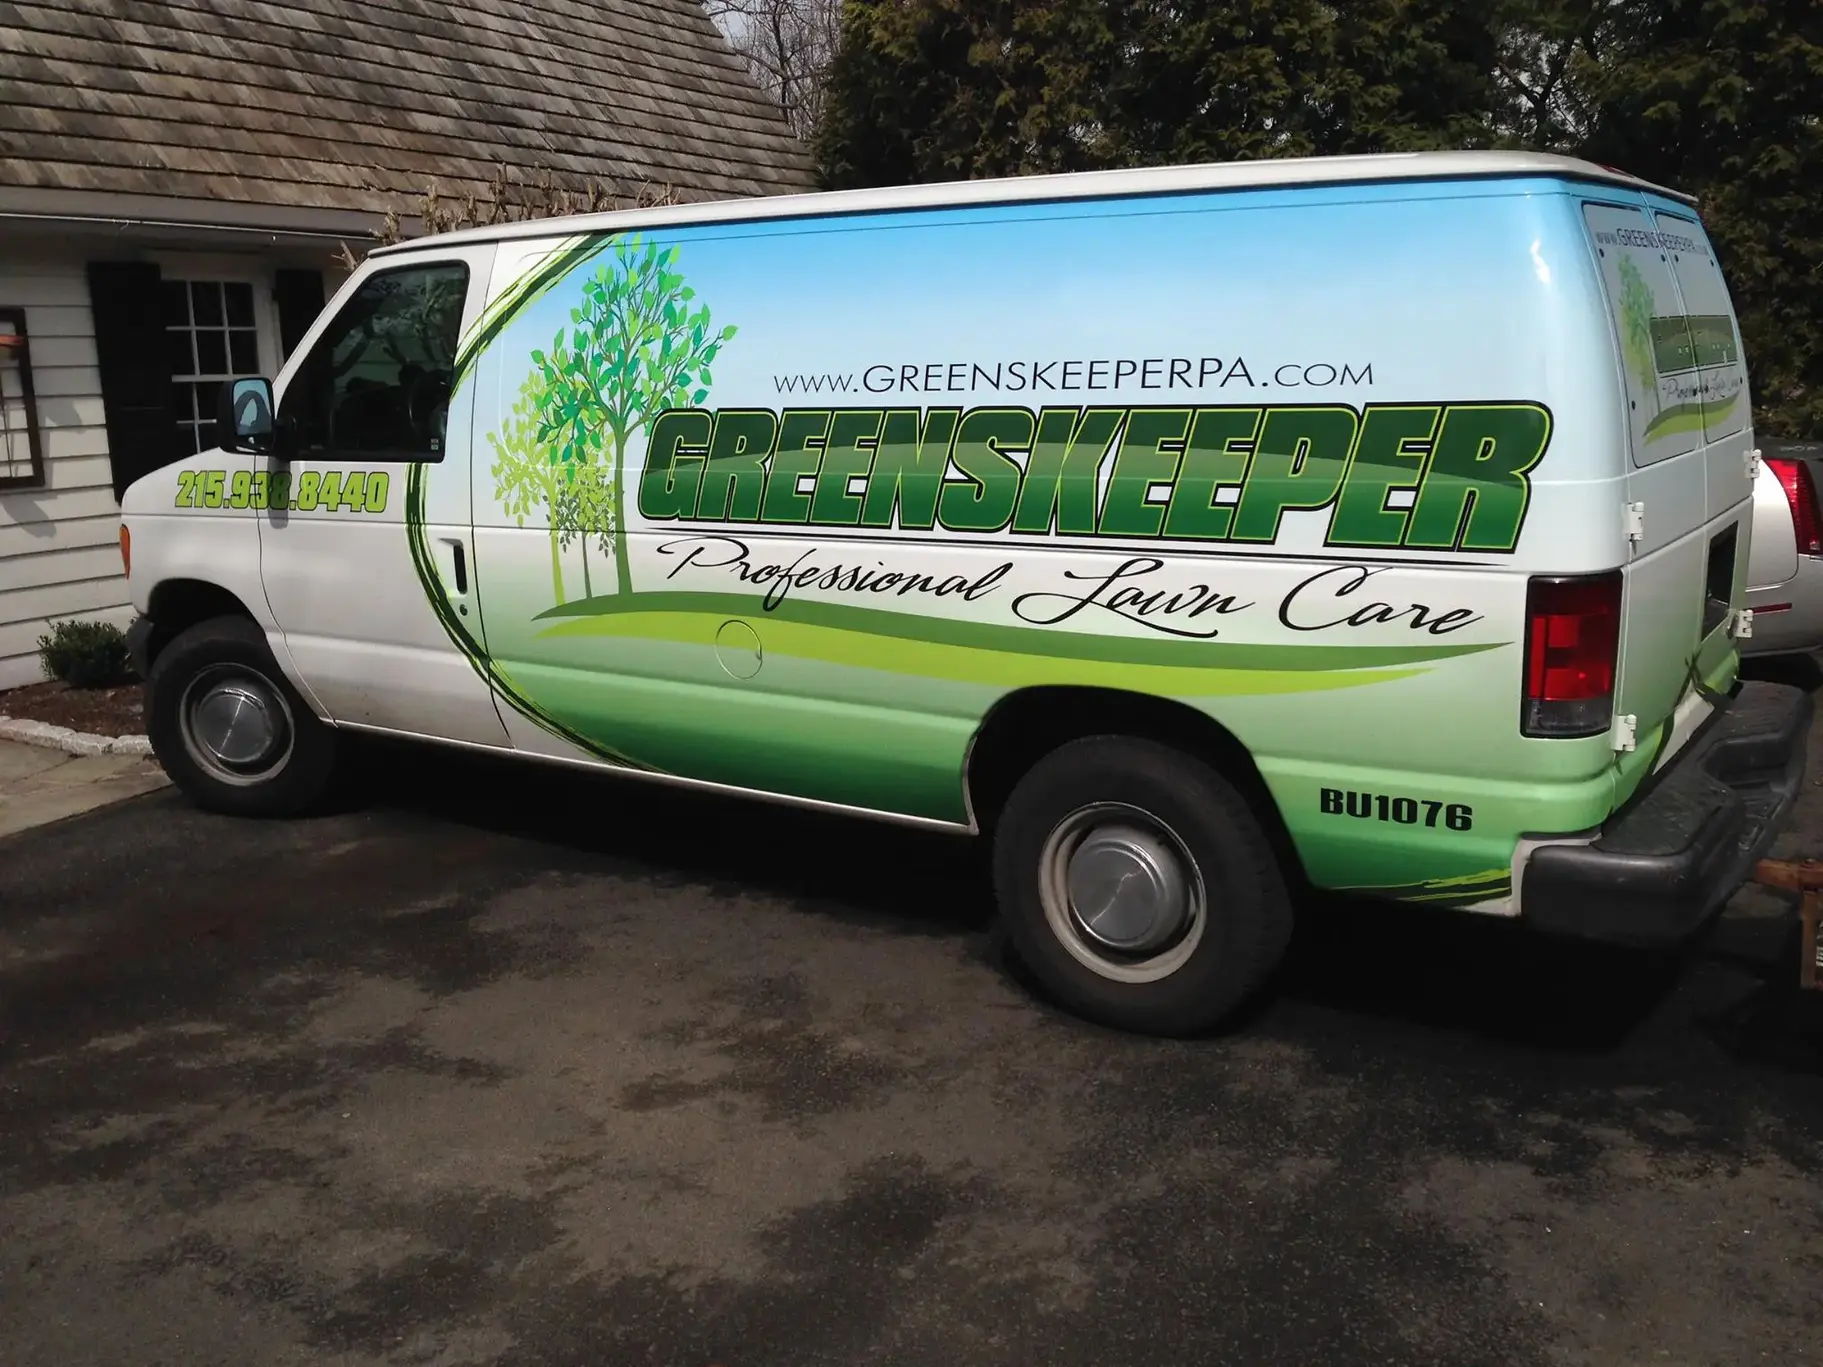 Greenskeeper van outside of house